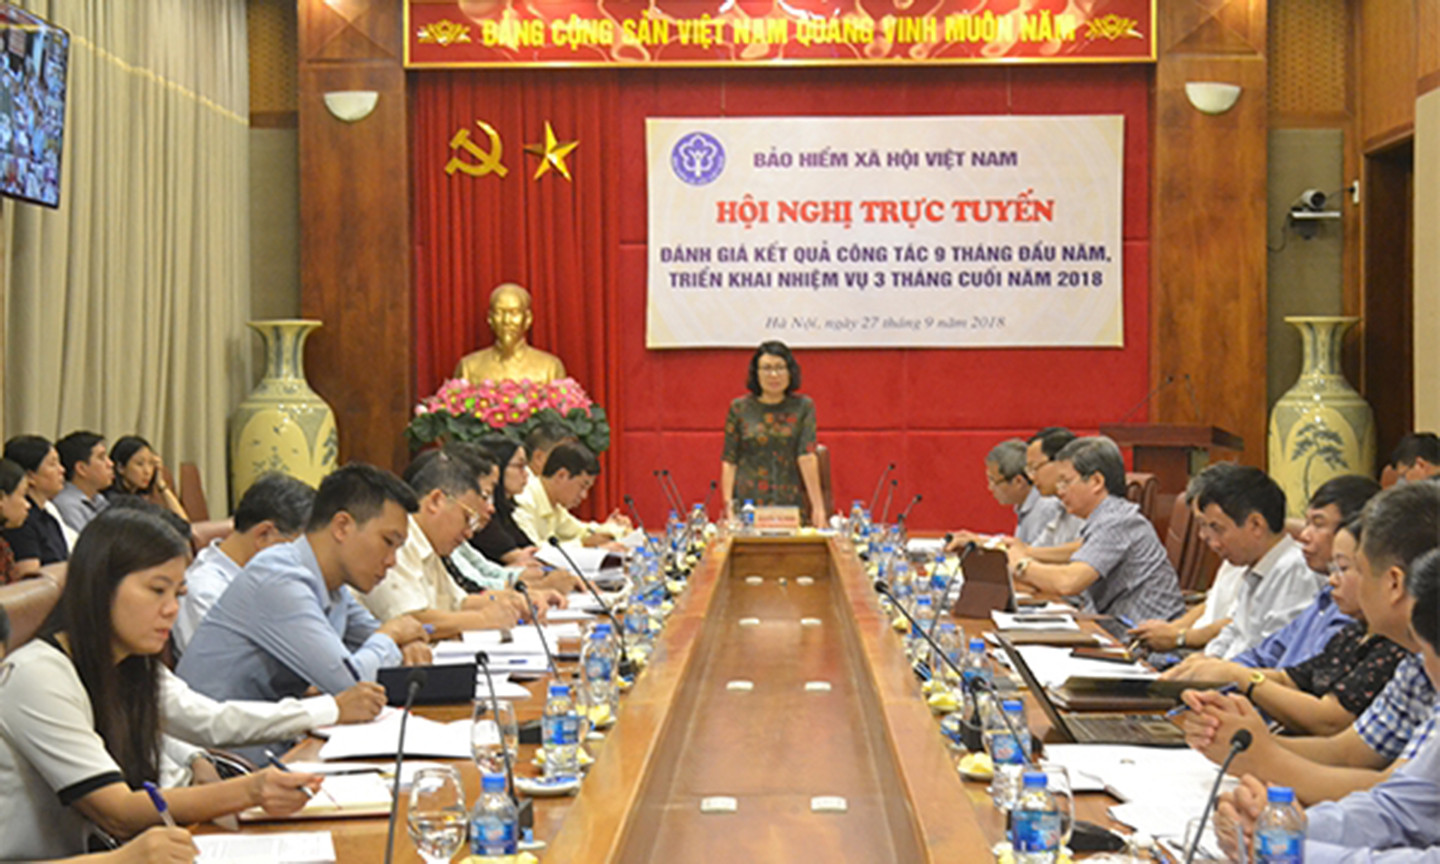 Bảo hiểm xã hội Việt Nam quyết tâm hoàn thành nhiệm vụ năm 2018